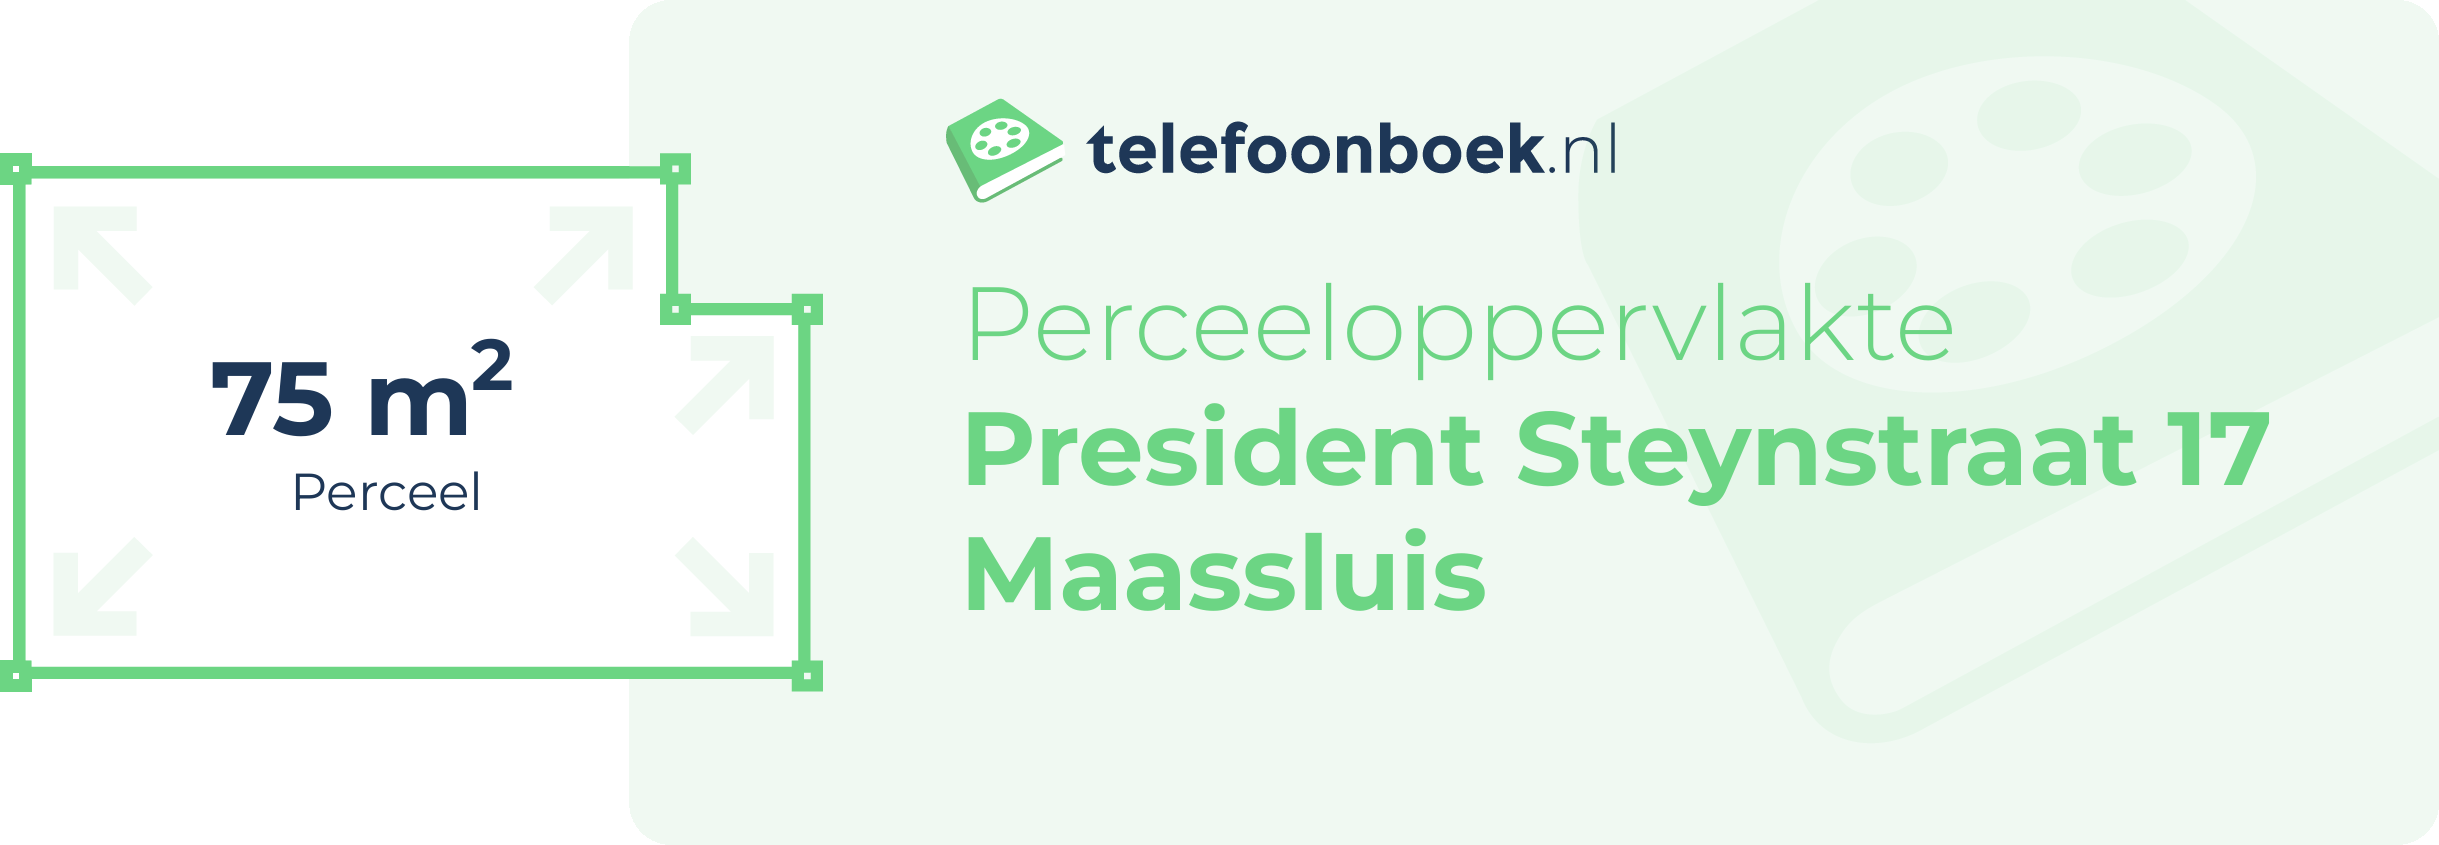 Perceeloppervlakte President Steynstraat 17 Maassluis